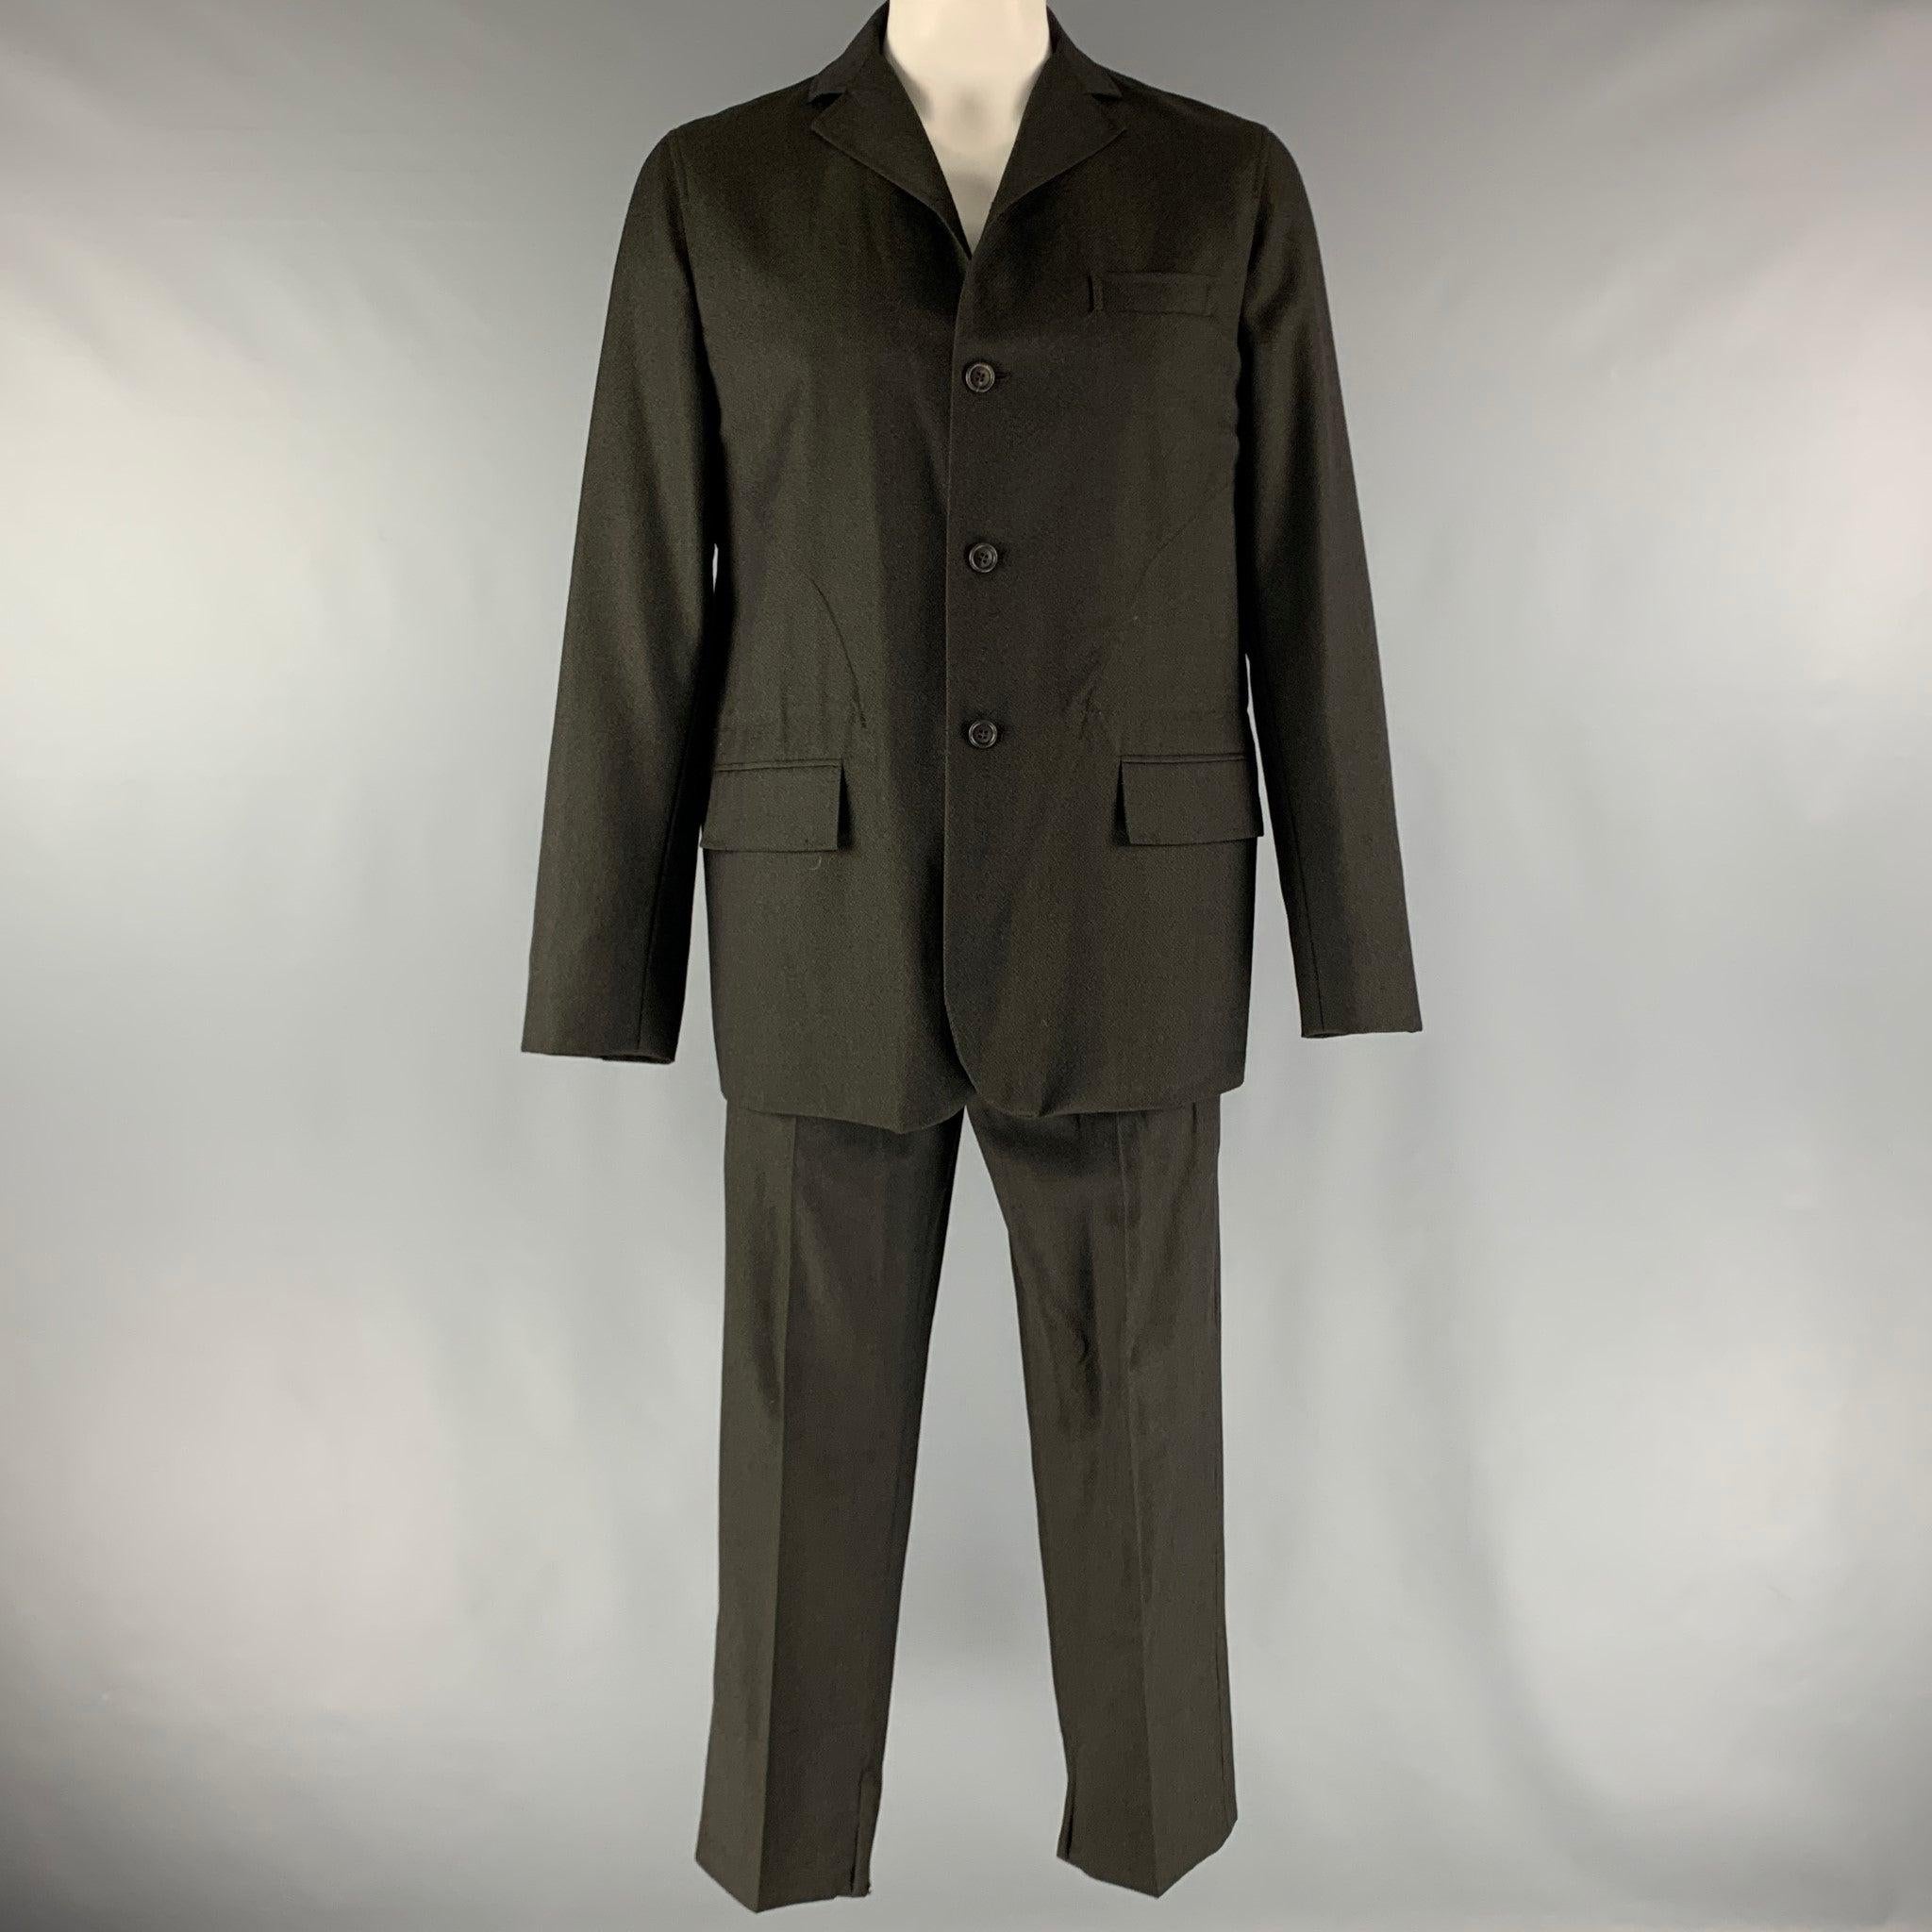 Le costume DOLCE & GABBANA est réalisé en sergé de laine noire sans doublure et comprend un manteau de sport à un seul boutonnage, à revers échancré, poches à rabat, poignets à fermeture éclair, et un pantalon assorti à devant plat. Fabriqué en